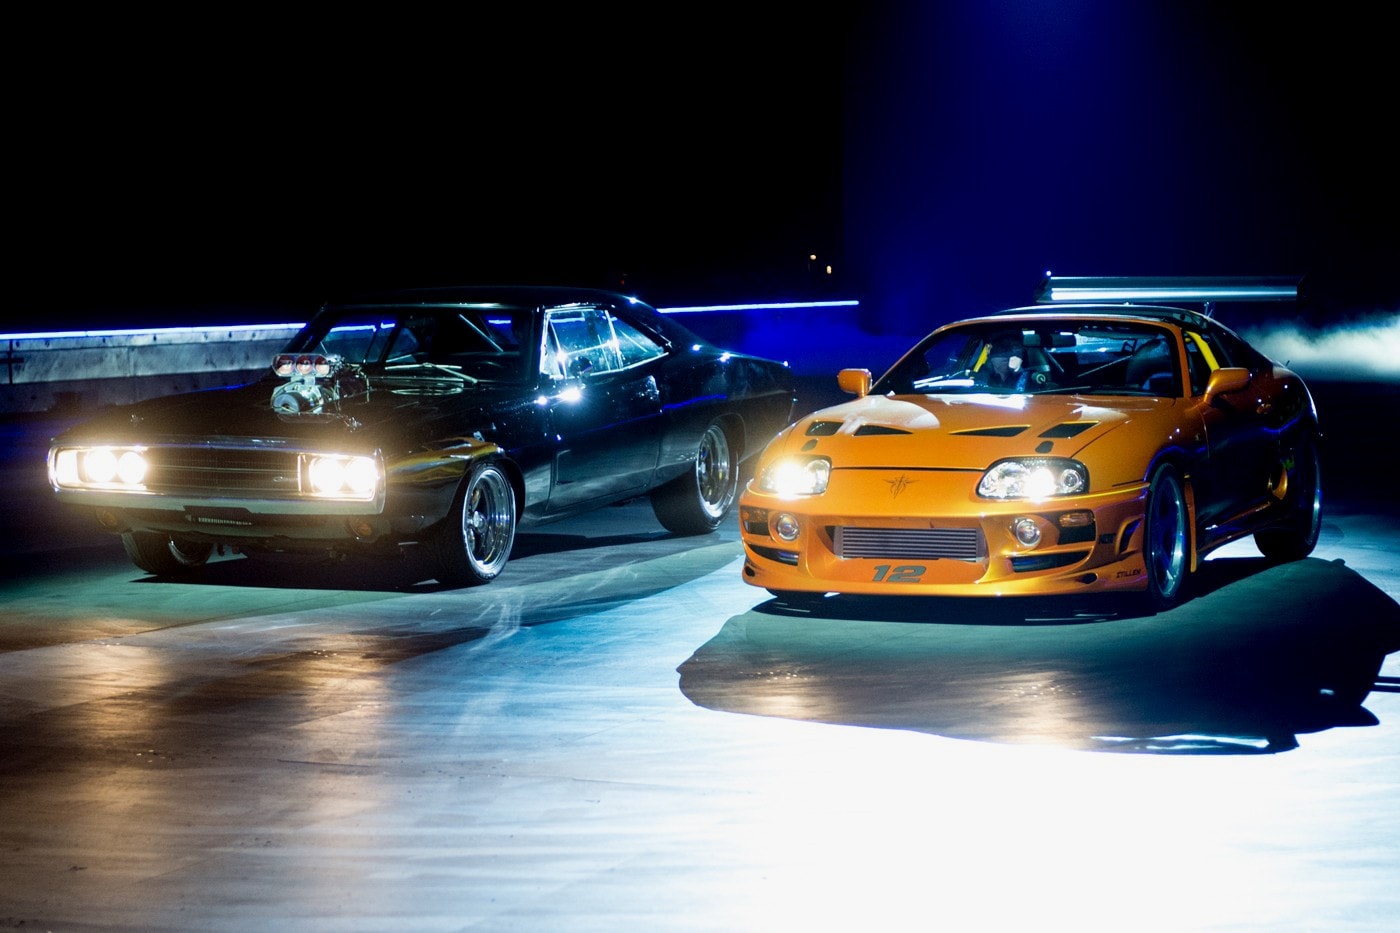 率先一覽全球最大規模《Fast & Furious》實車收藏